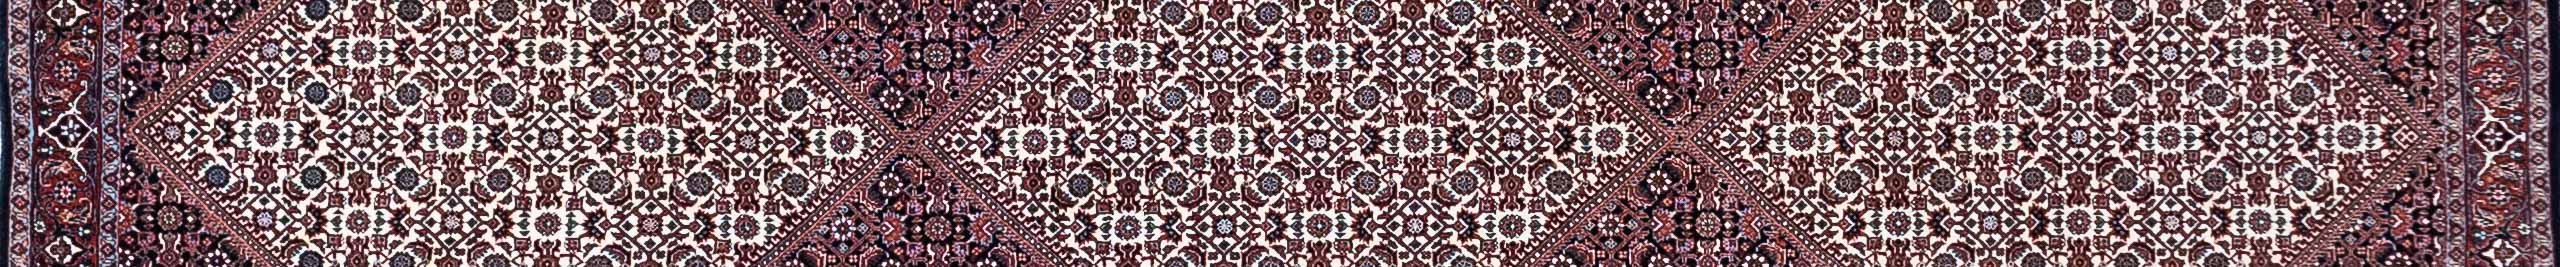 Bidjar Persian Carpet Rug N1Carpet Canada Montreal Tapis Persan 2590